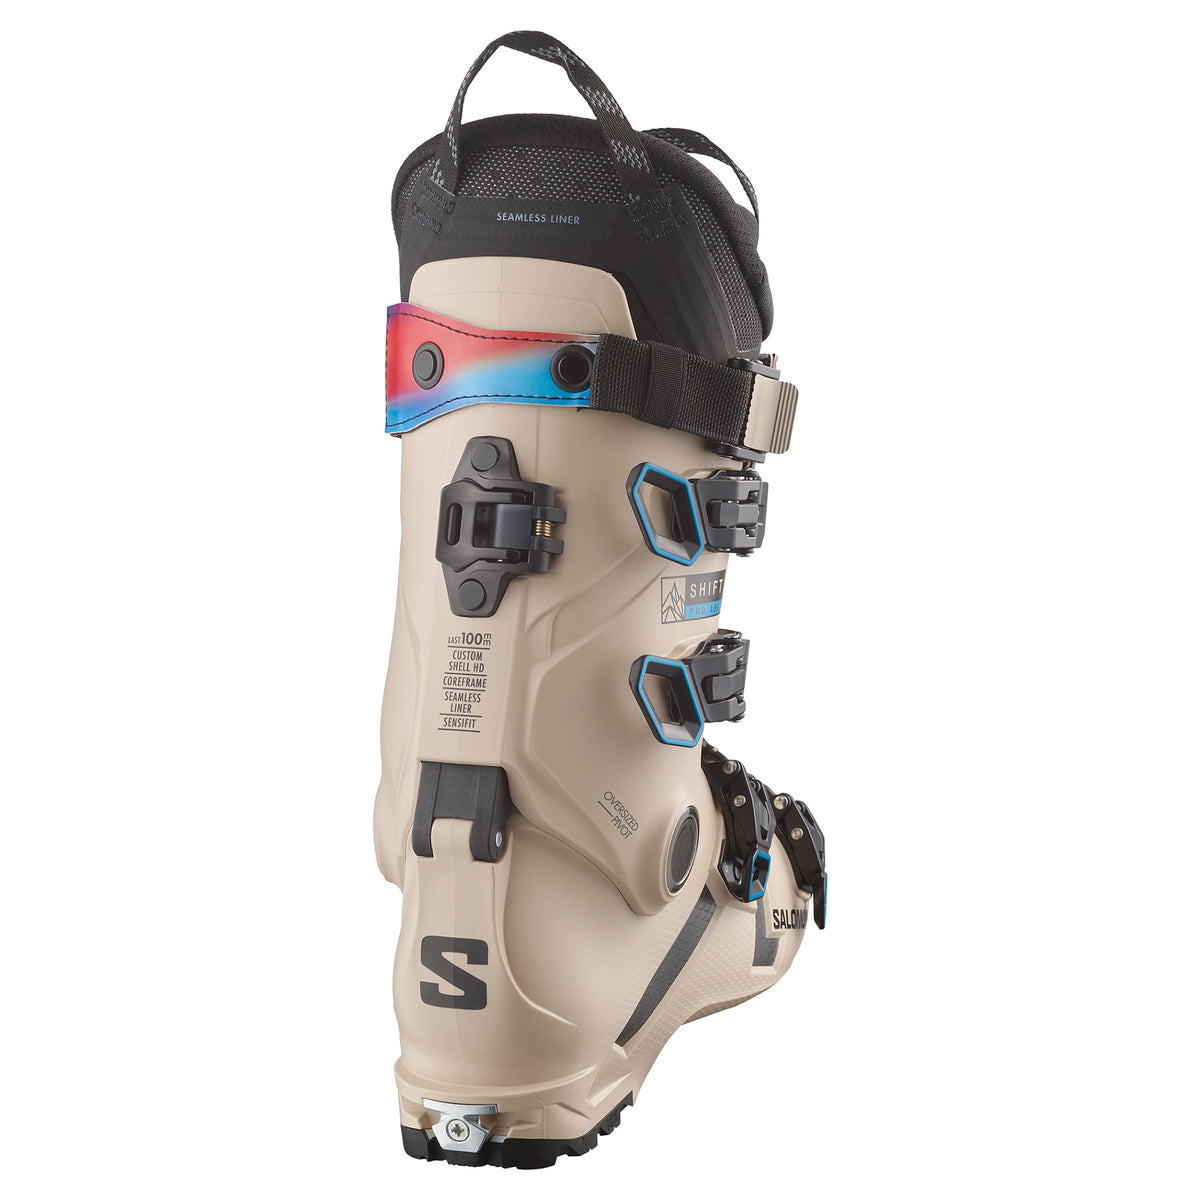 Salomon SHIFT PRO 130 AT Ski Boots 2024